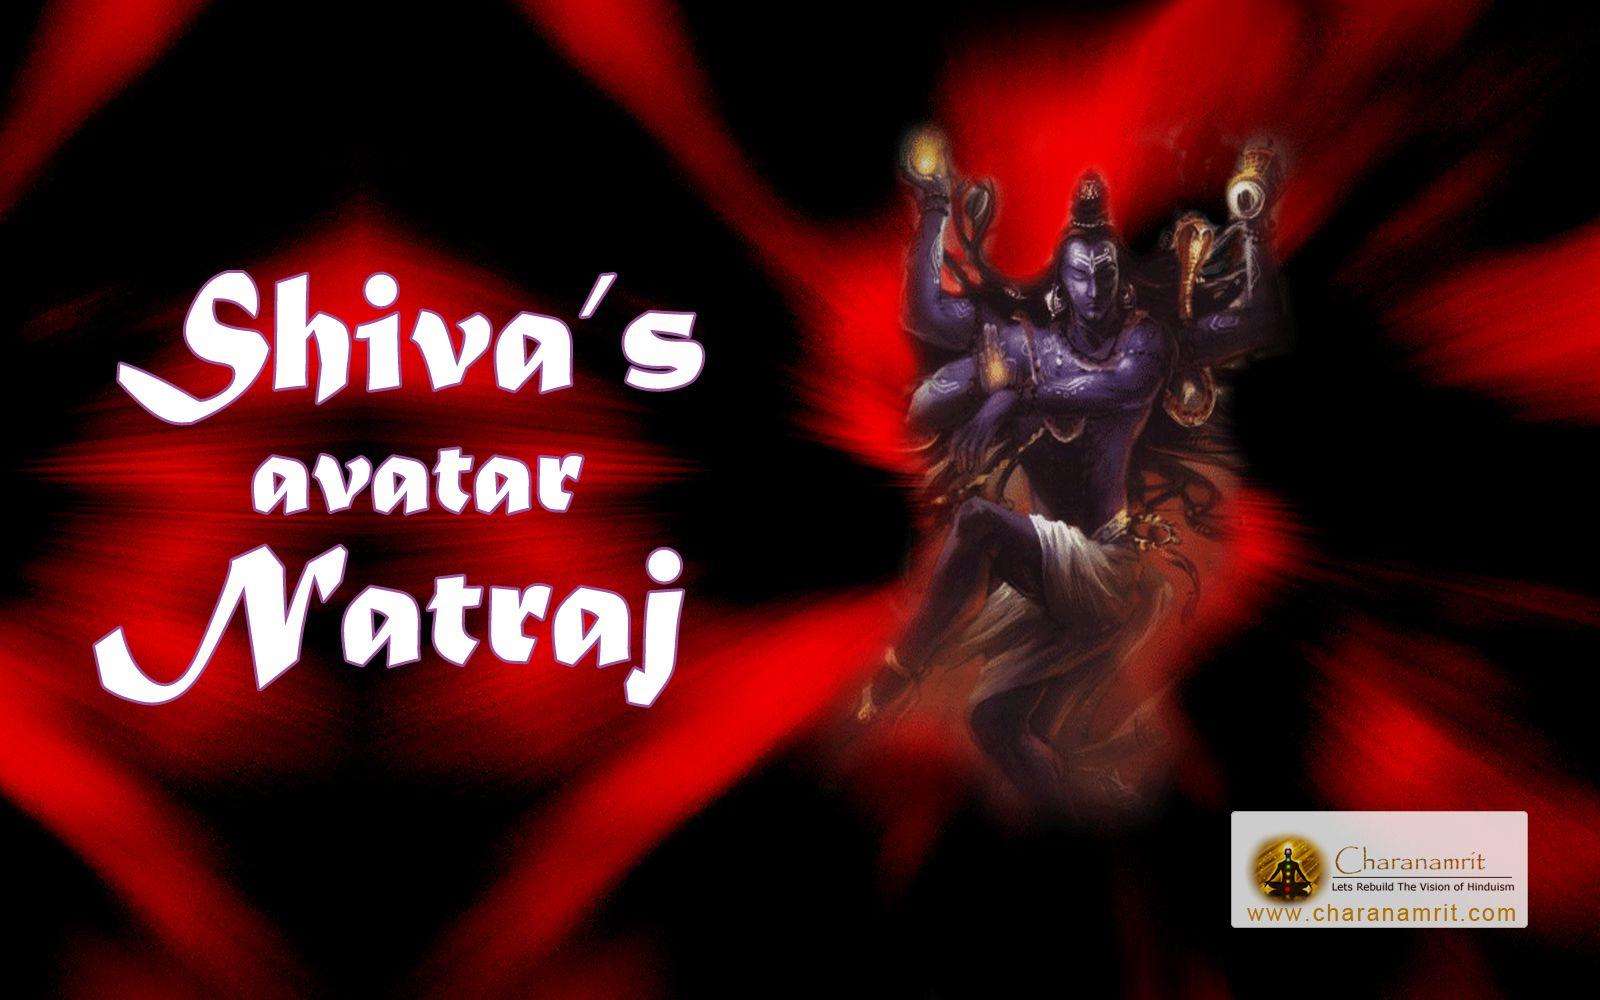 Lord Shiva's avatar Nataraja beautiful 3D HD Wallpaper for free